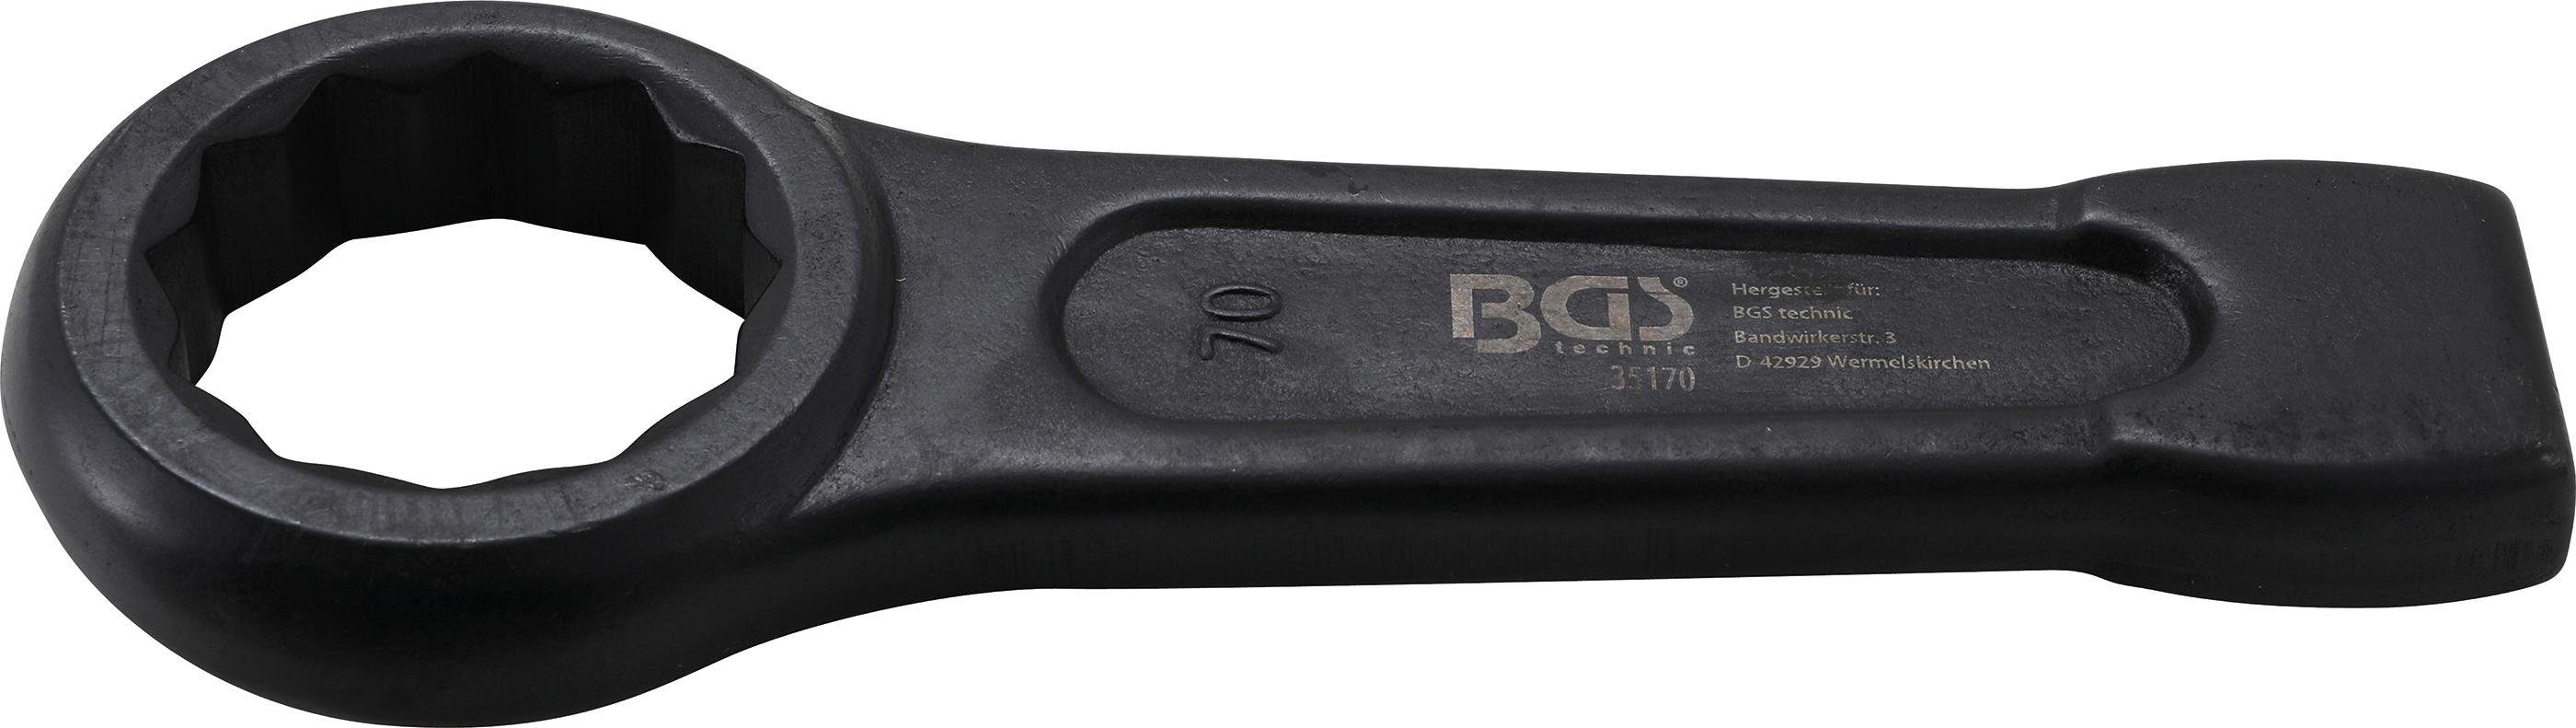 BGS technic mm 70 Ringschlüssel SW Schlag-Ringschlüssel